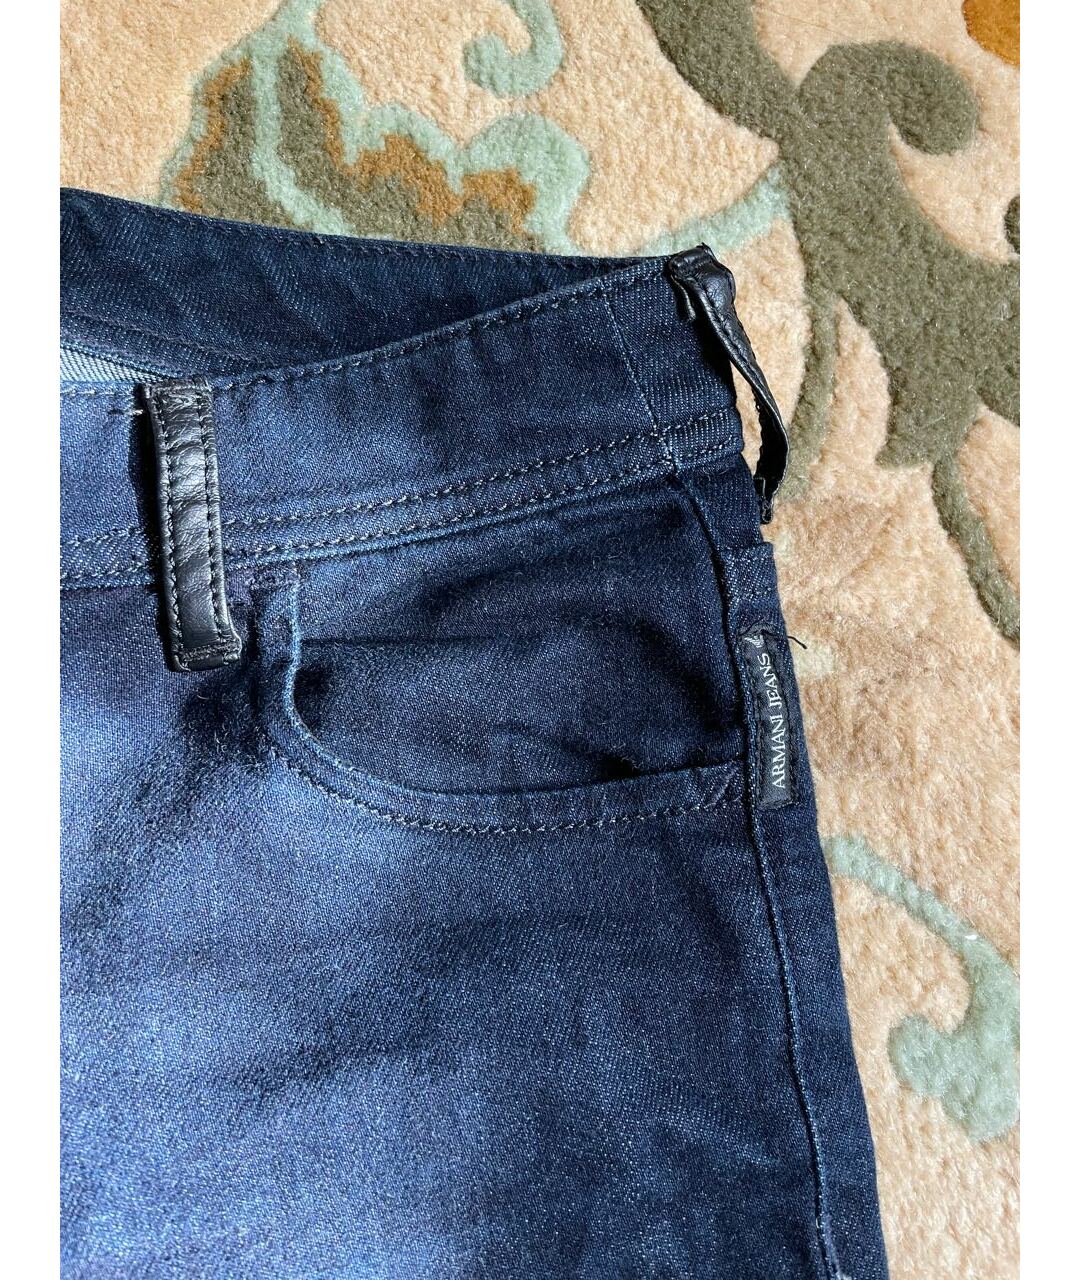 ARMANI JEANS Темно-синие хлопковые прямые джинсы, фото 3